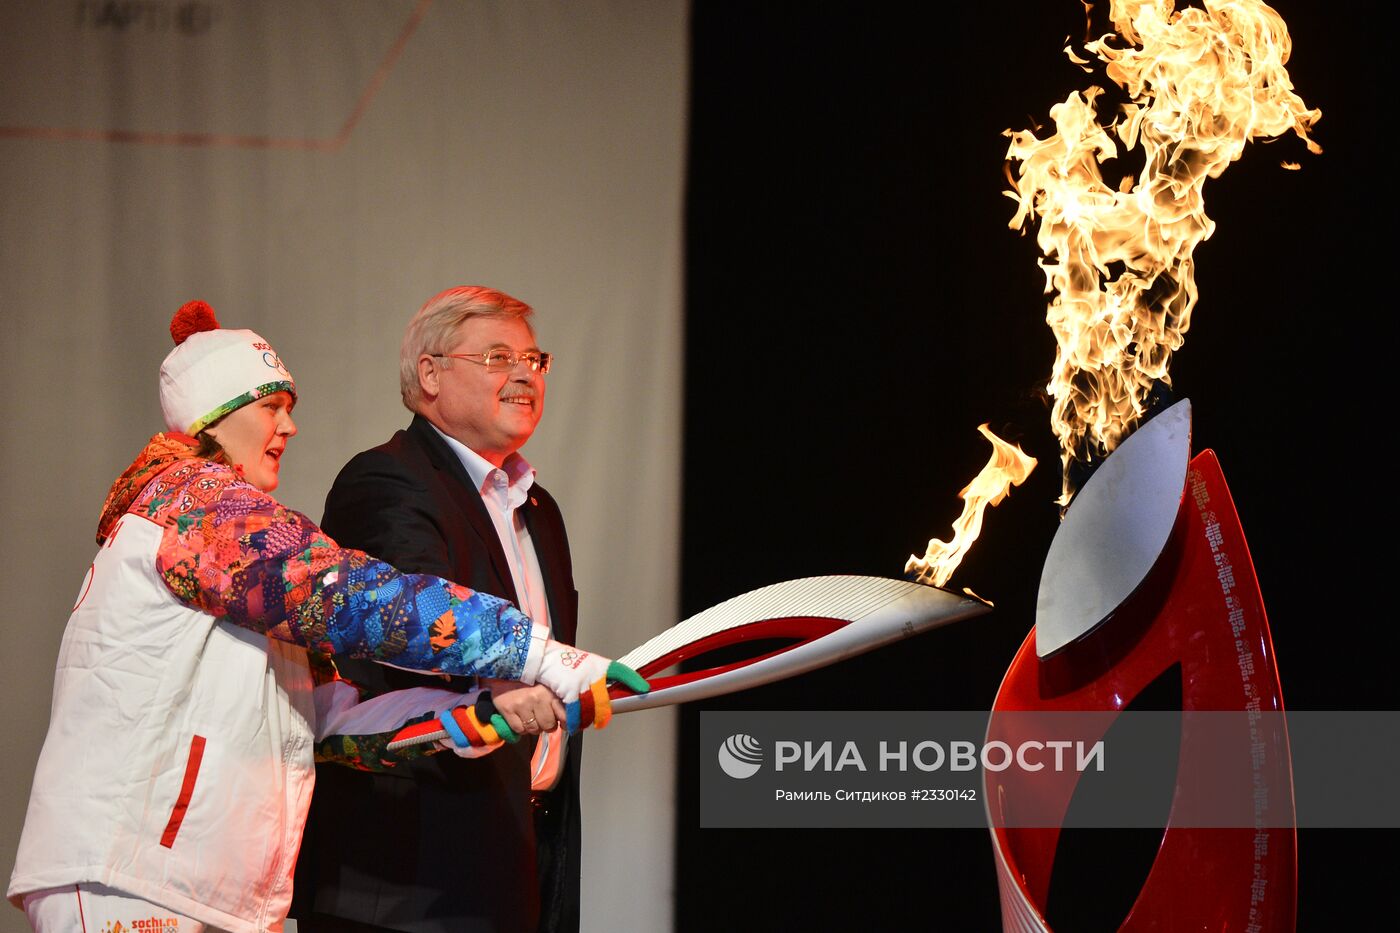 Эстафета Олимпийского огня. Томск